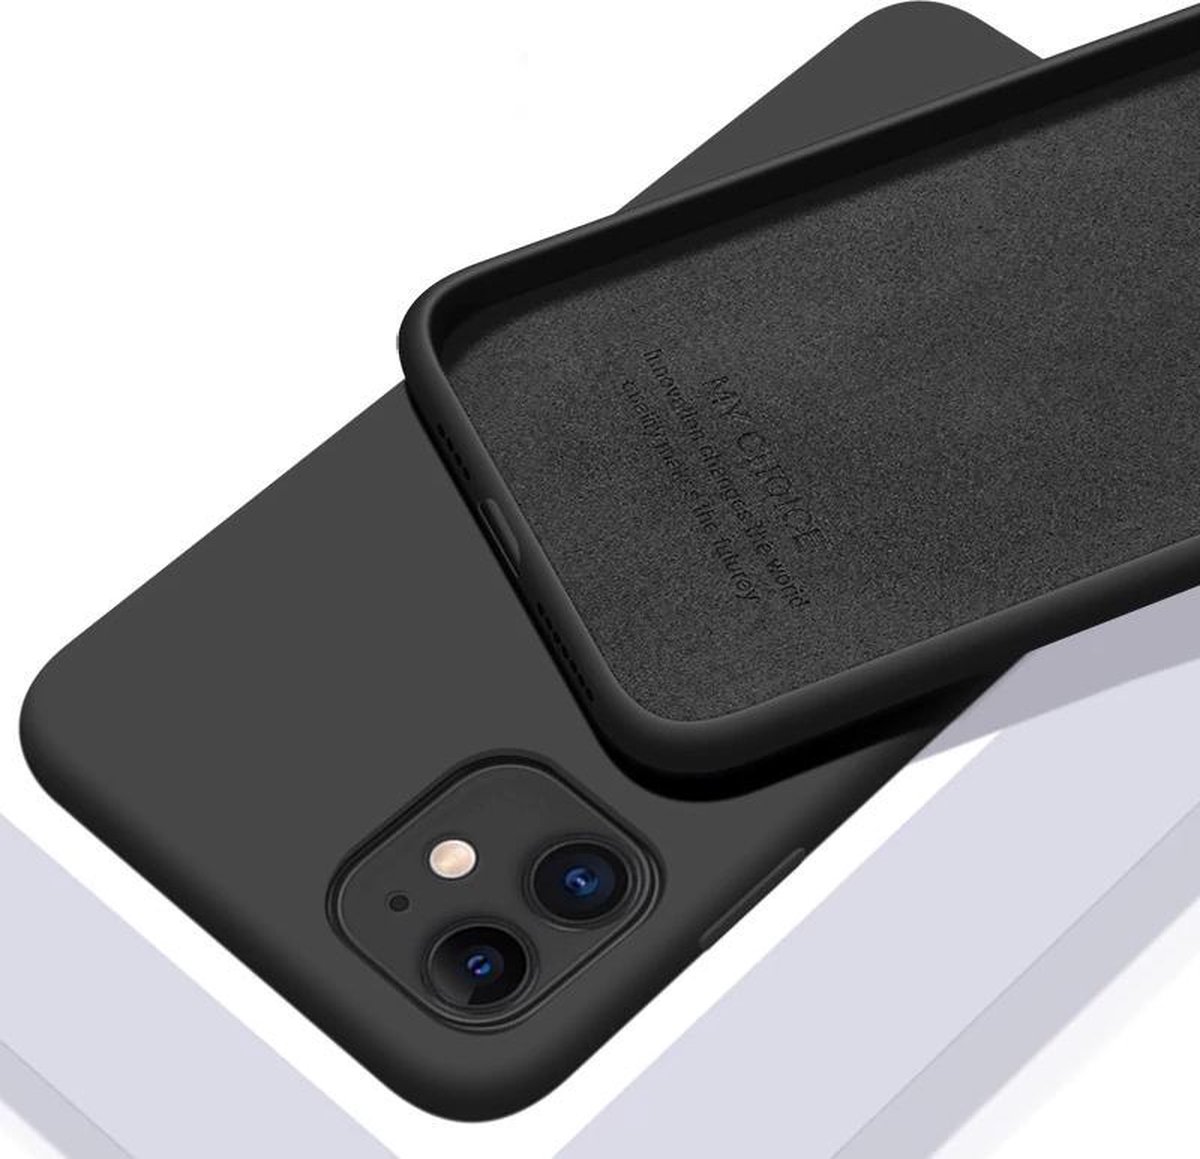 Premium IPhone 11 hoesje - Zwart - Siliconen hoesje - Case